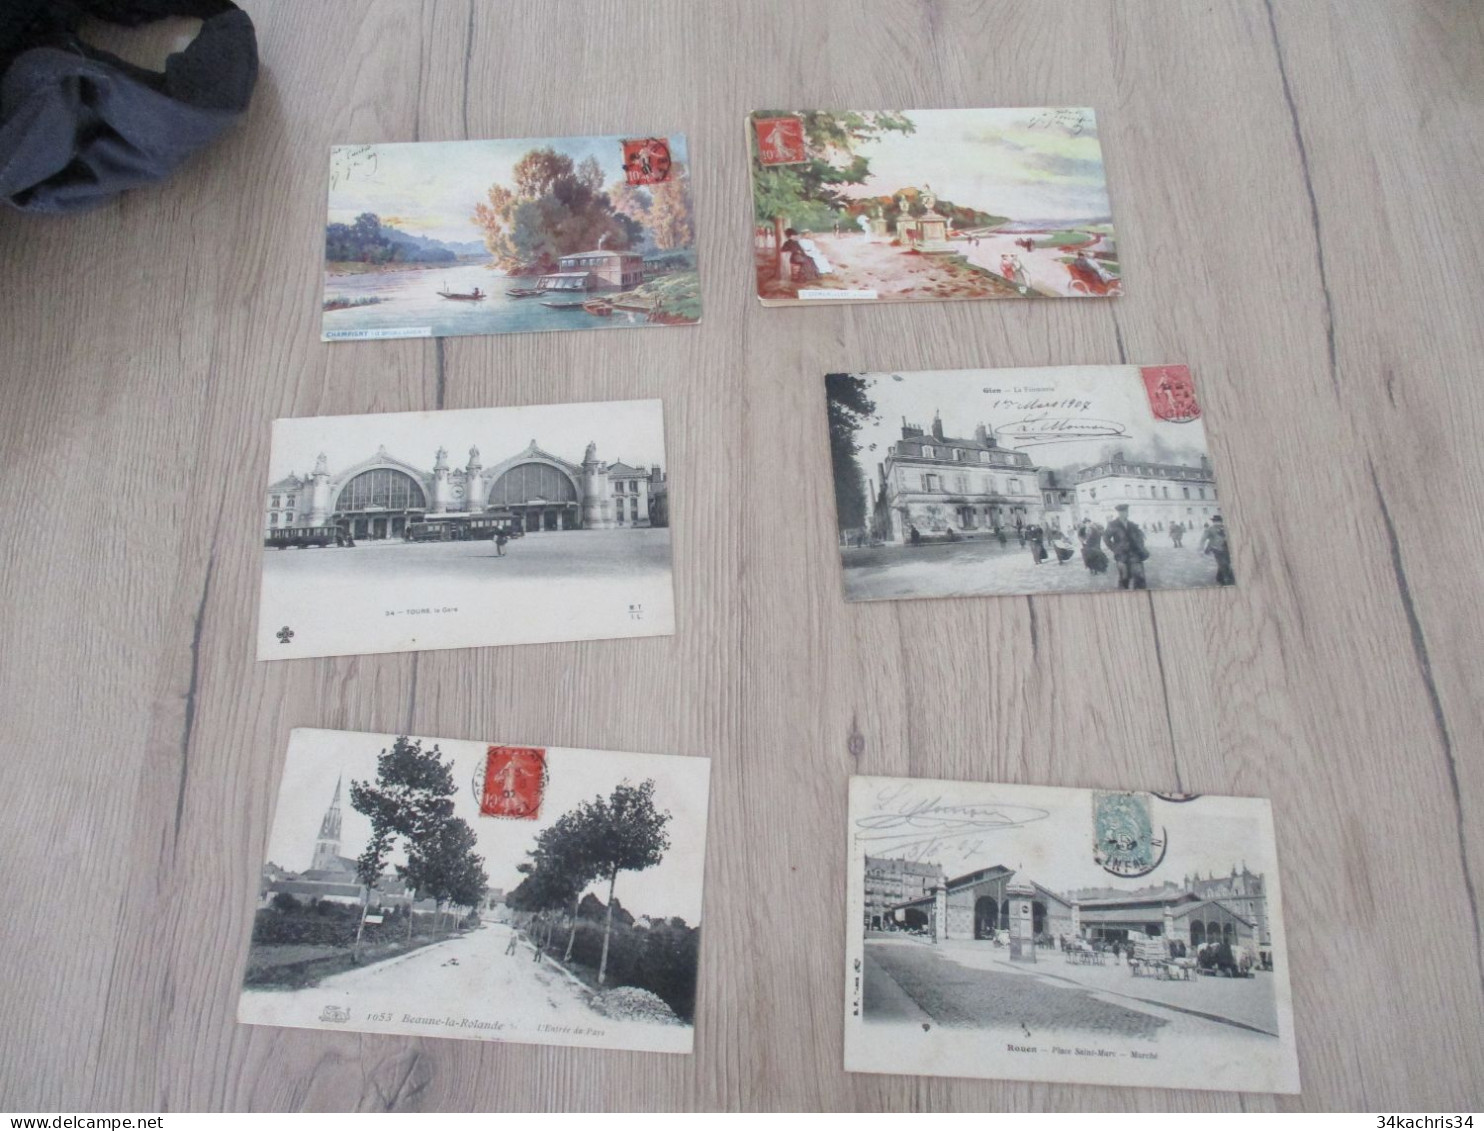 N°1 déstockage collection énorme CPA cartes postales 100 CPA différentes petites et moyennes cartes pas de drouille